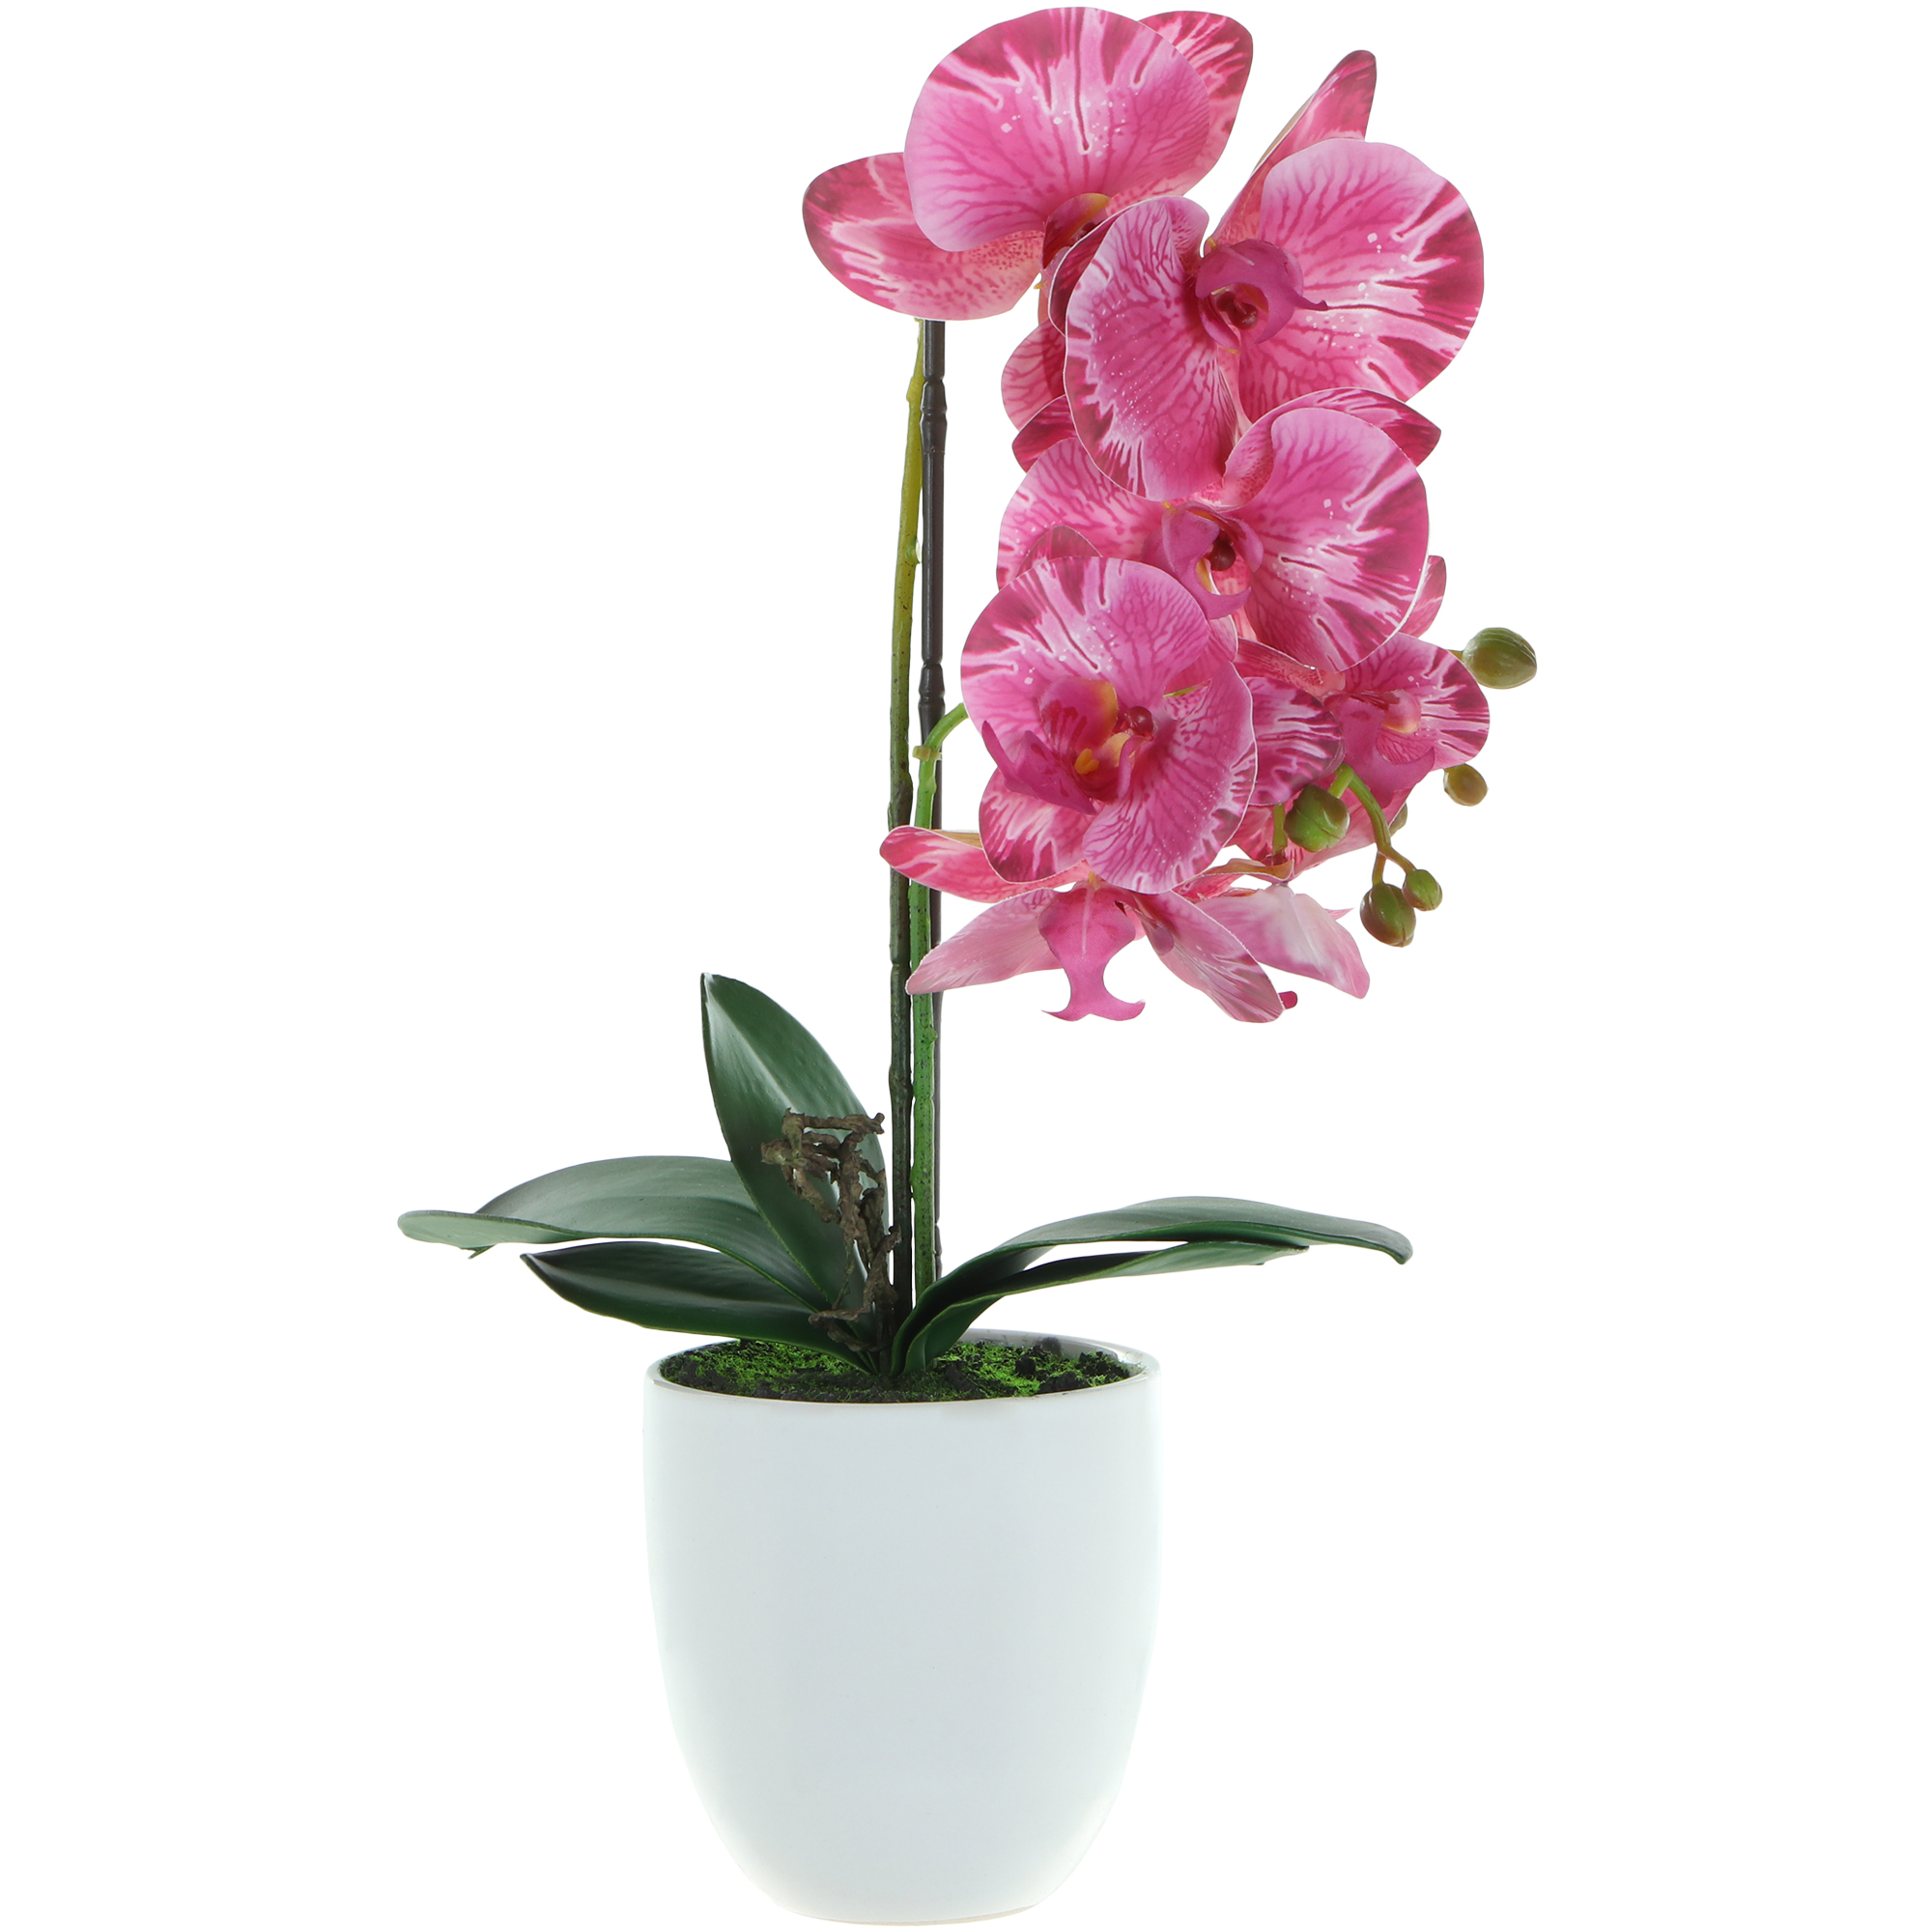 Цветок искусственный в горшке Fuzhou Light орхидея 2 цвета 54 см ок искусственный fuzhou light в горшке орхидея тигровая 62 см